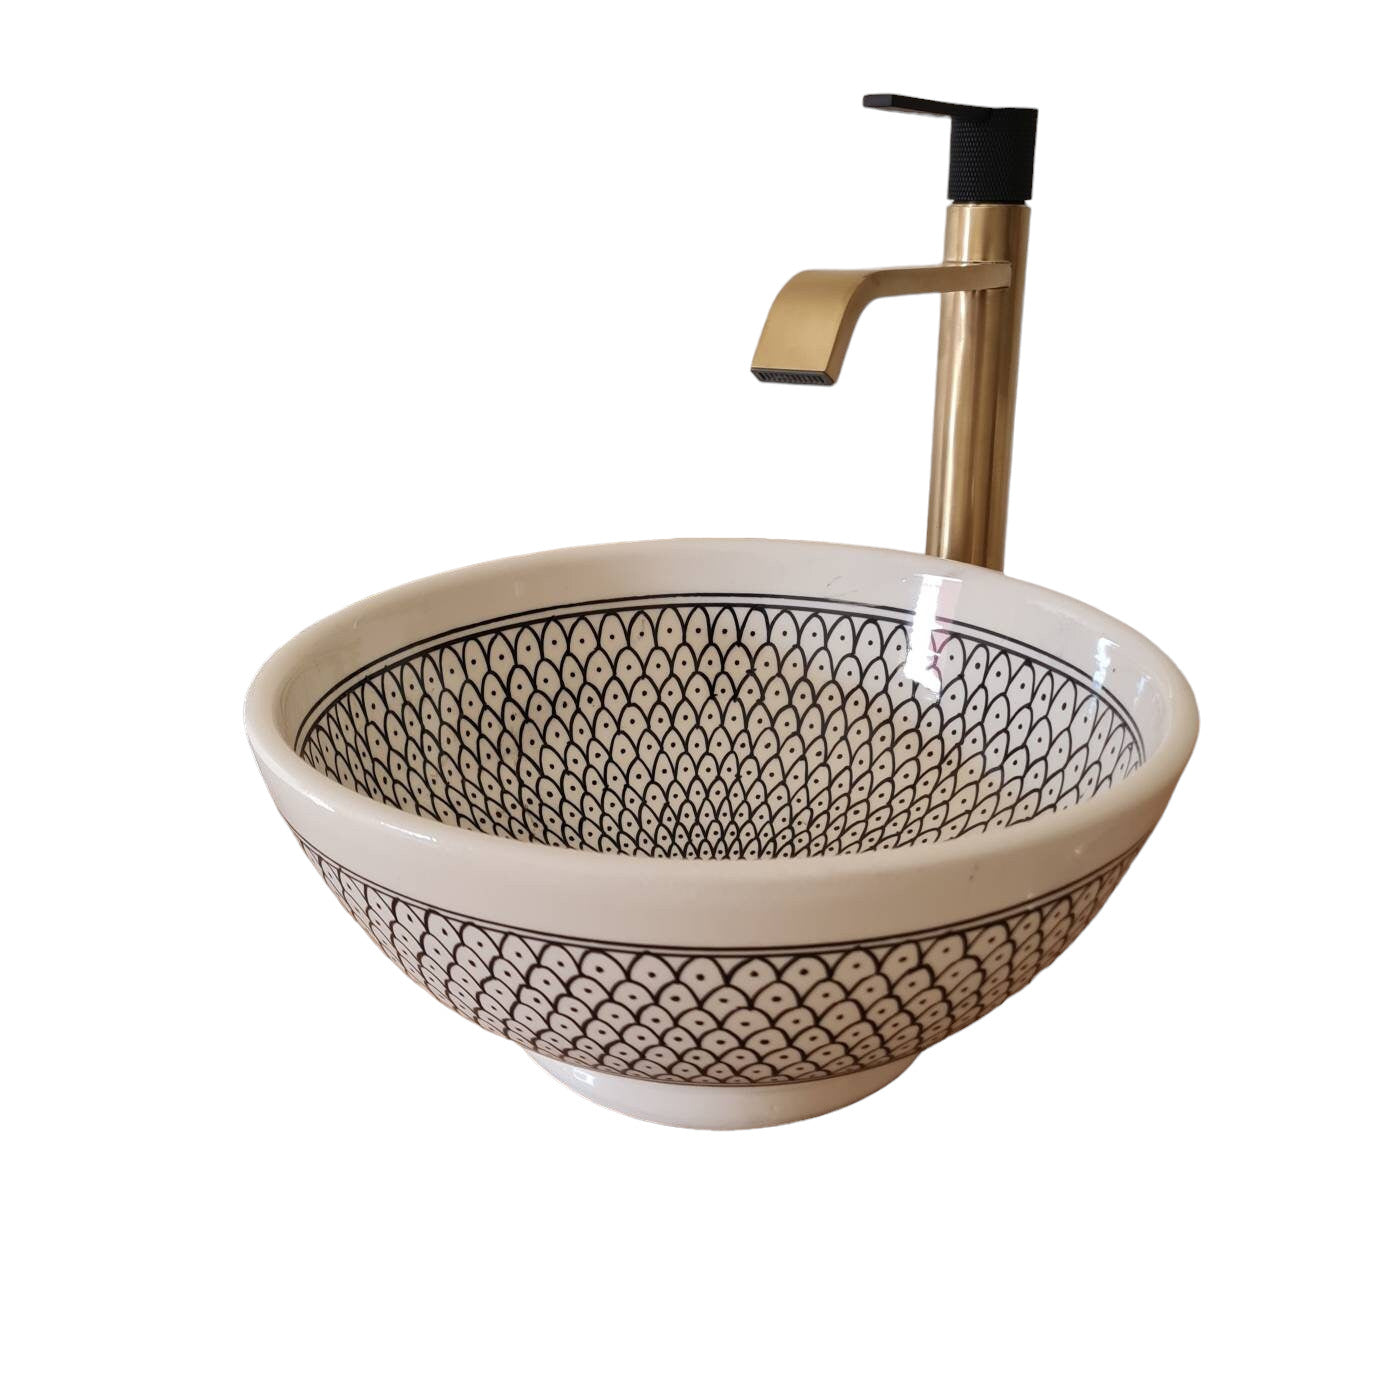 Vasque en céramique fait main - Bathroom sink bowl - black and white sink bowl #25